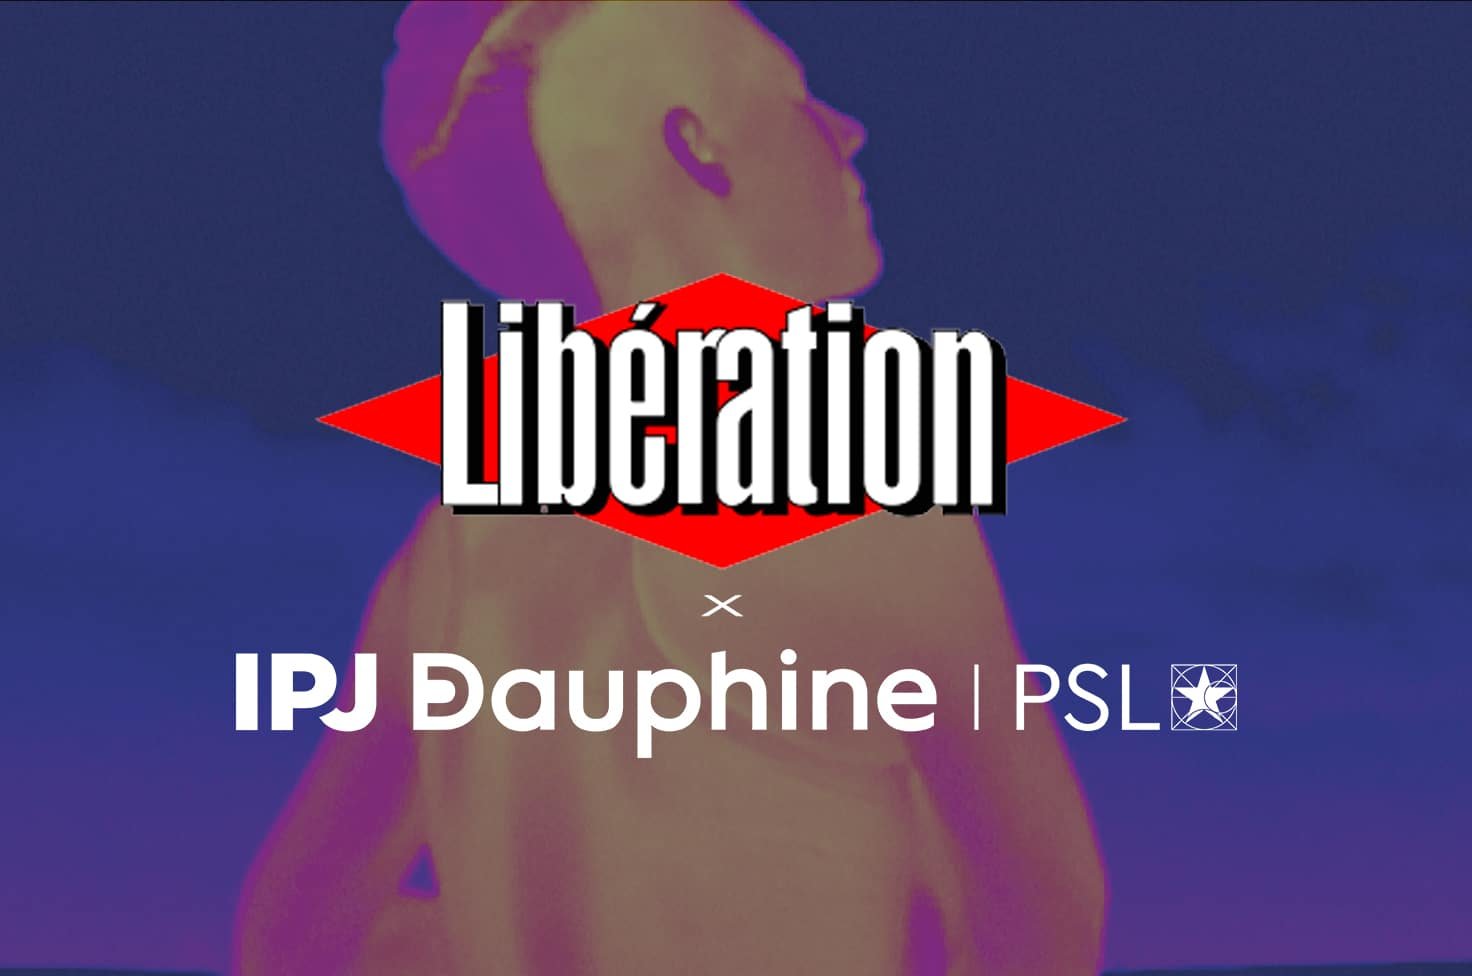 IPJ Dauphine | PSL s’associe à Libération pour le climat